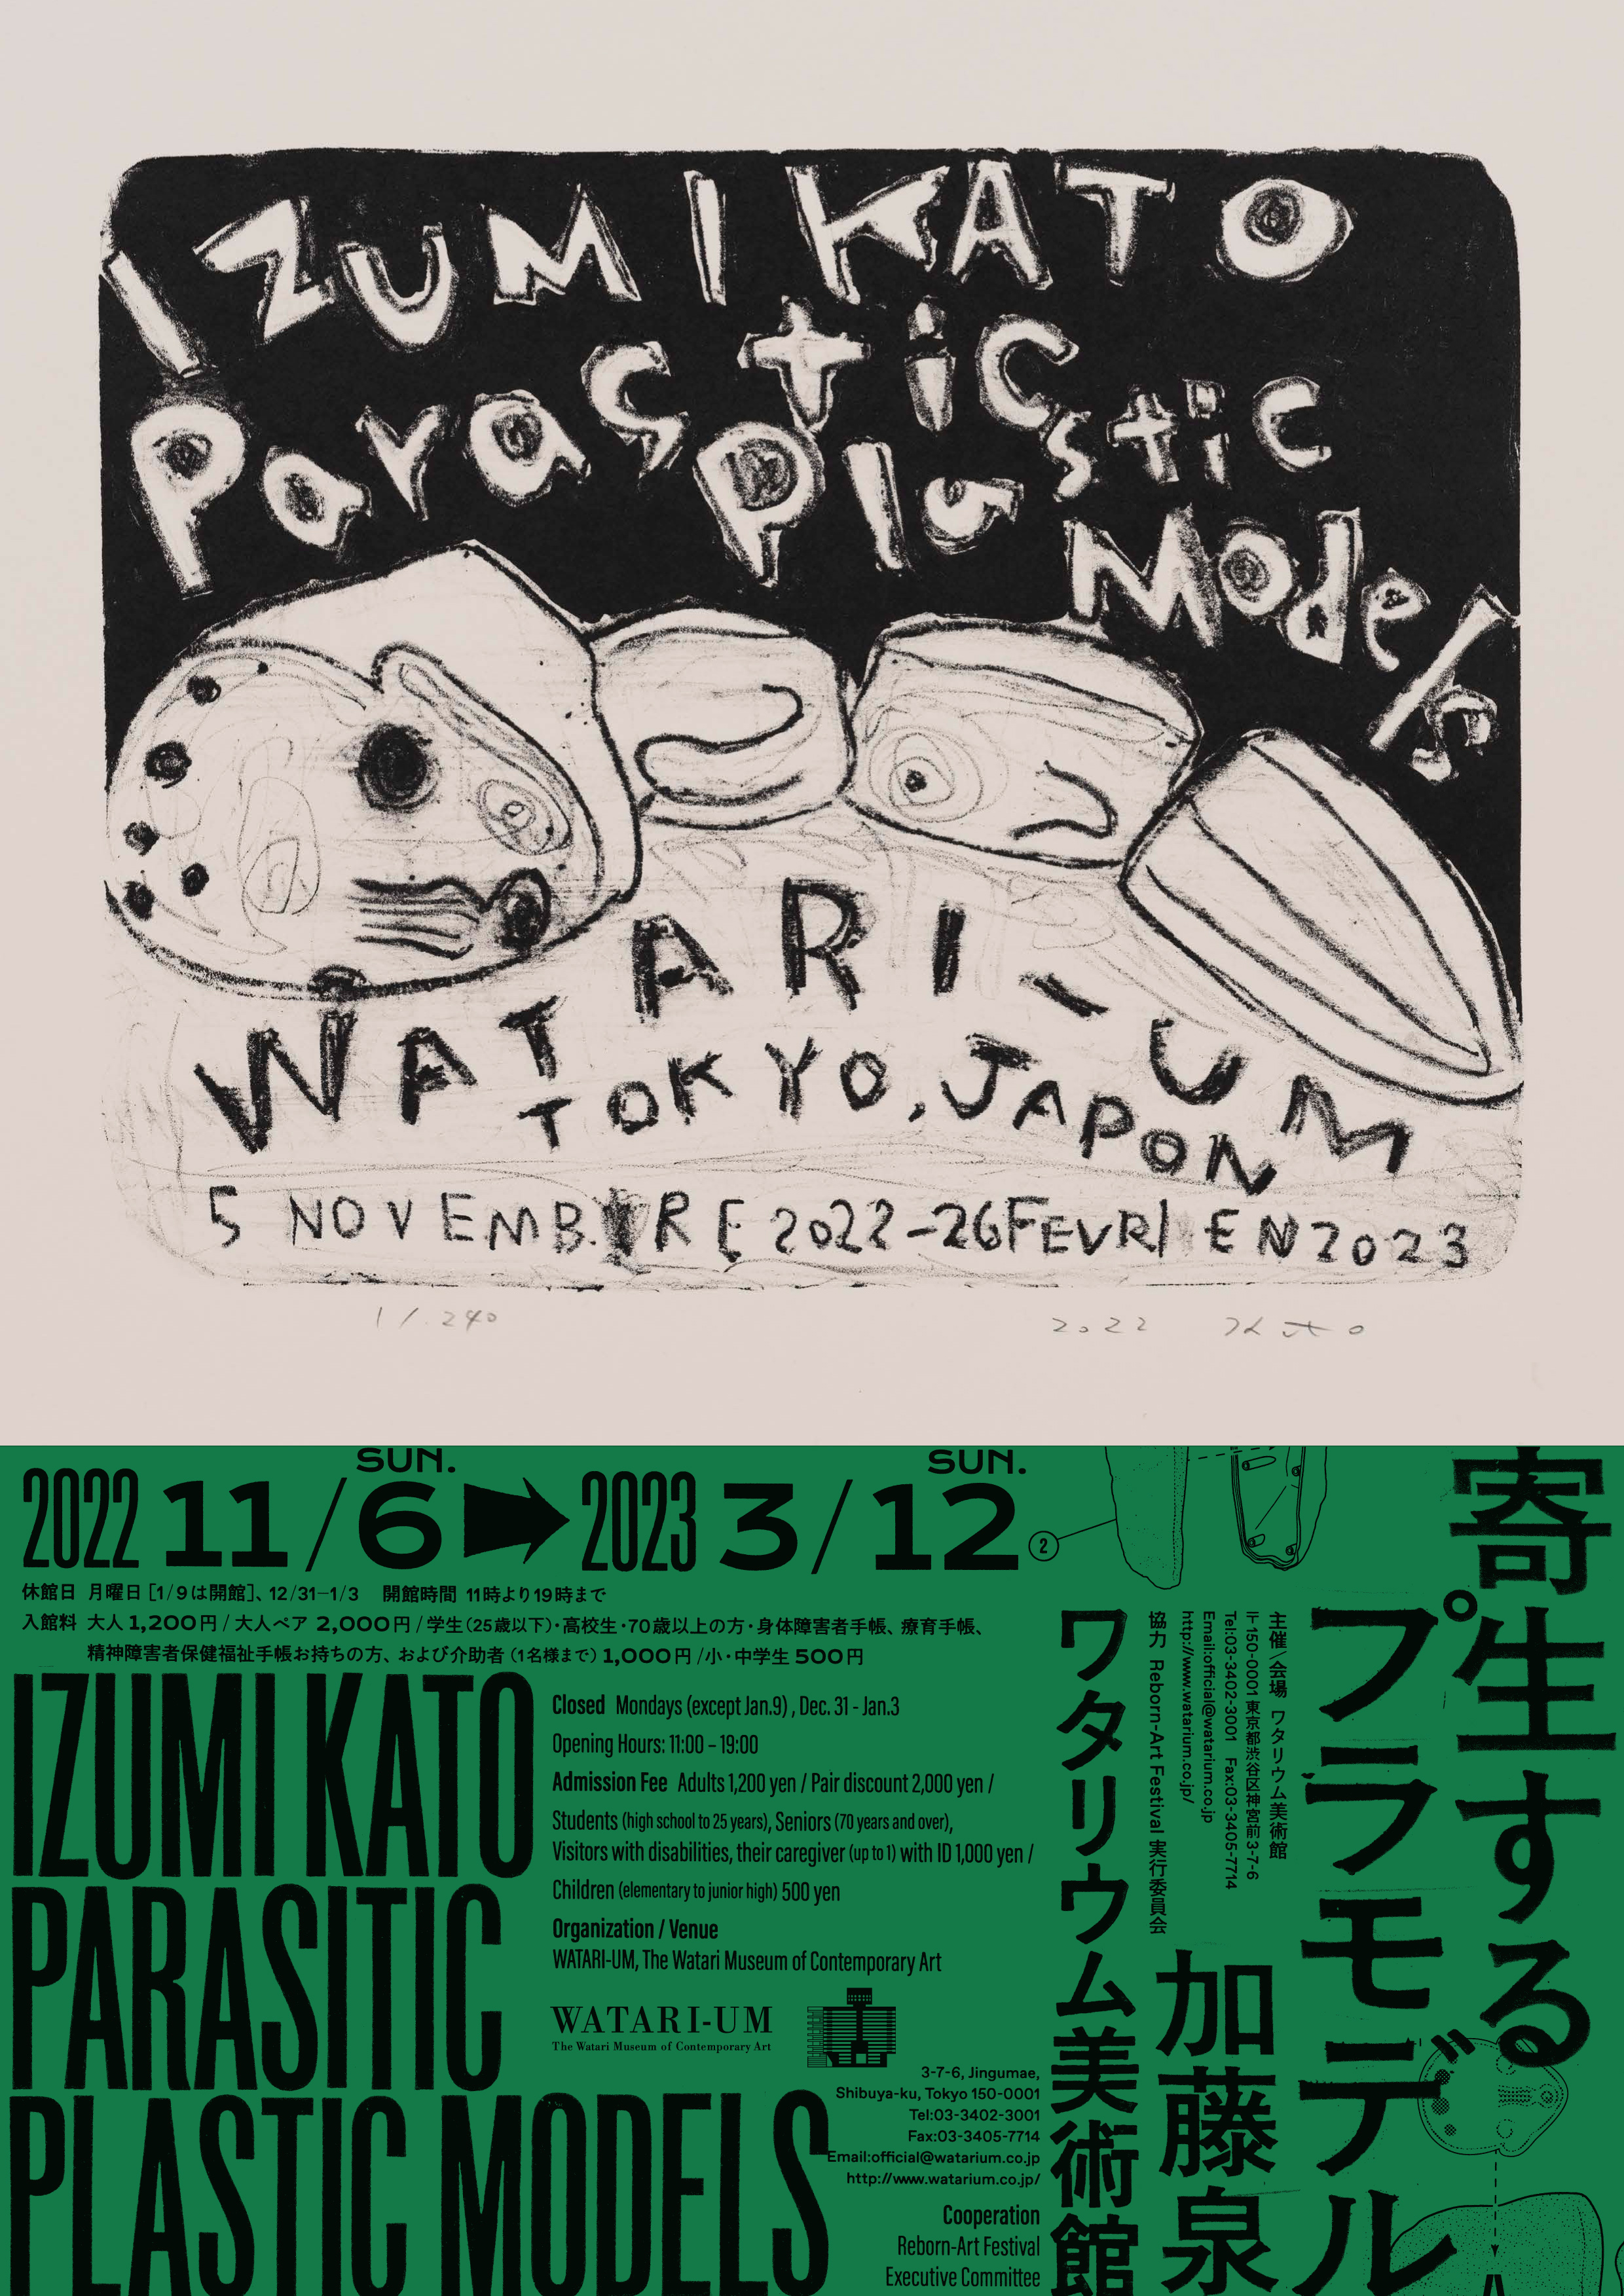 加藤泉とTHE TETORAPOTZ, Potziland Records Pop-up Store」 （ライト 